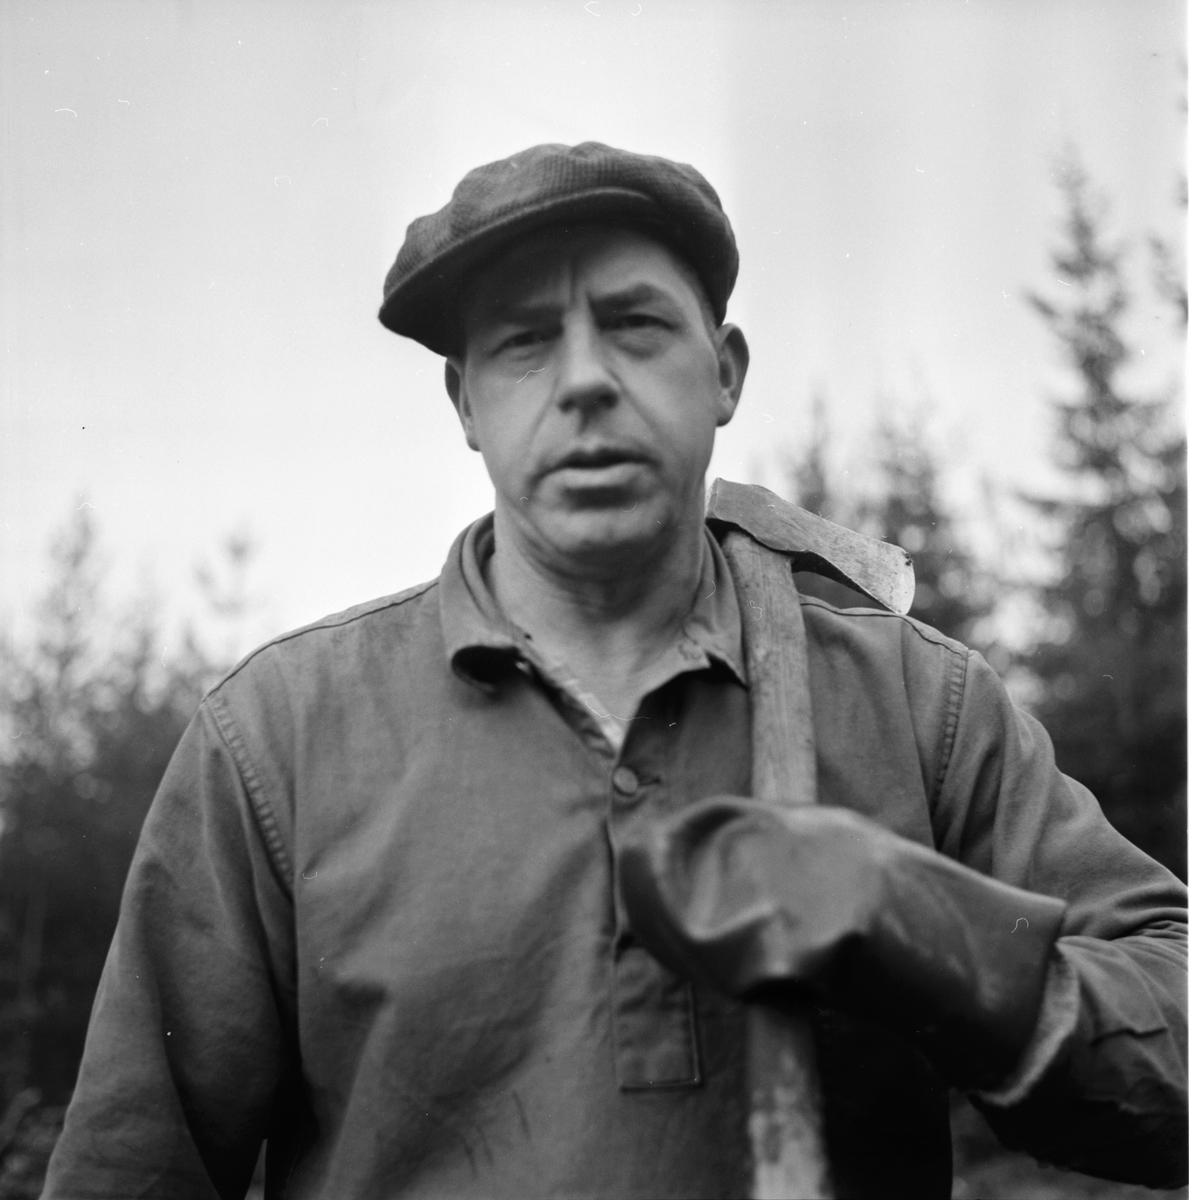 Söräng,
Erik Eriksson,
handikappad skogsarbetare,
20 nov 1966